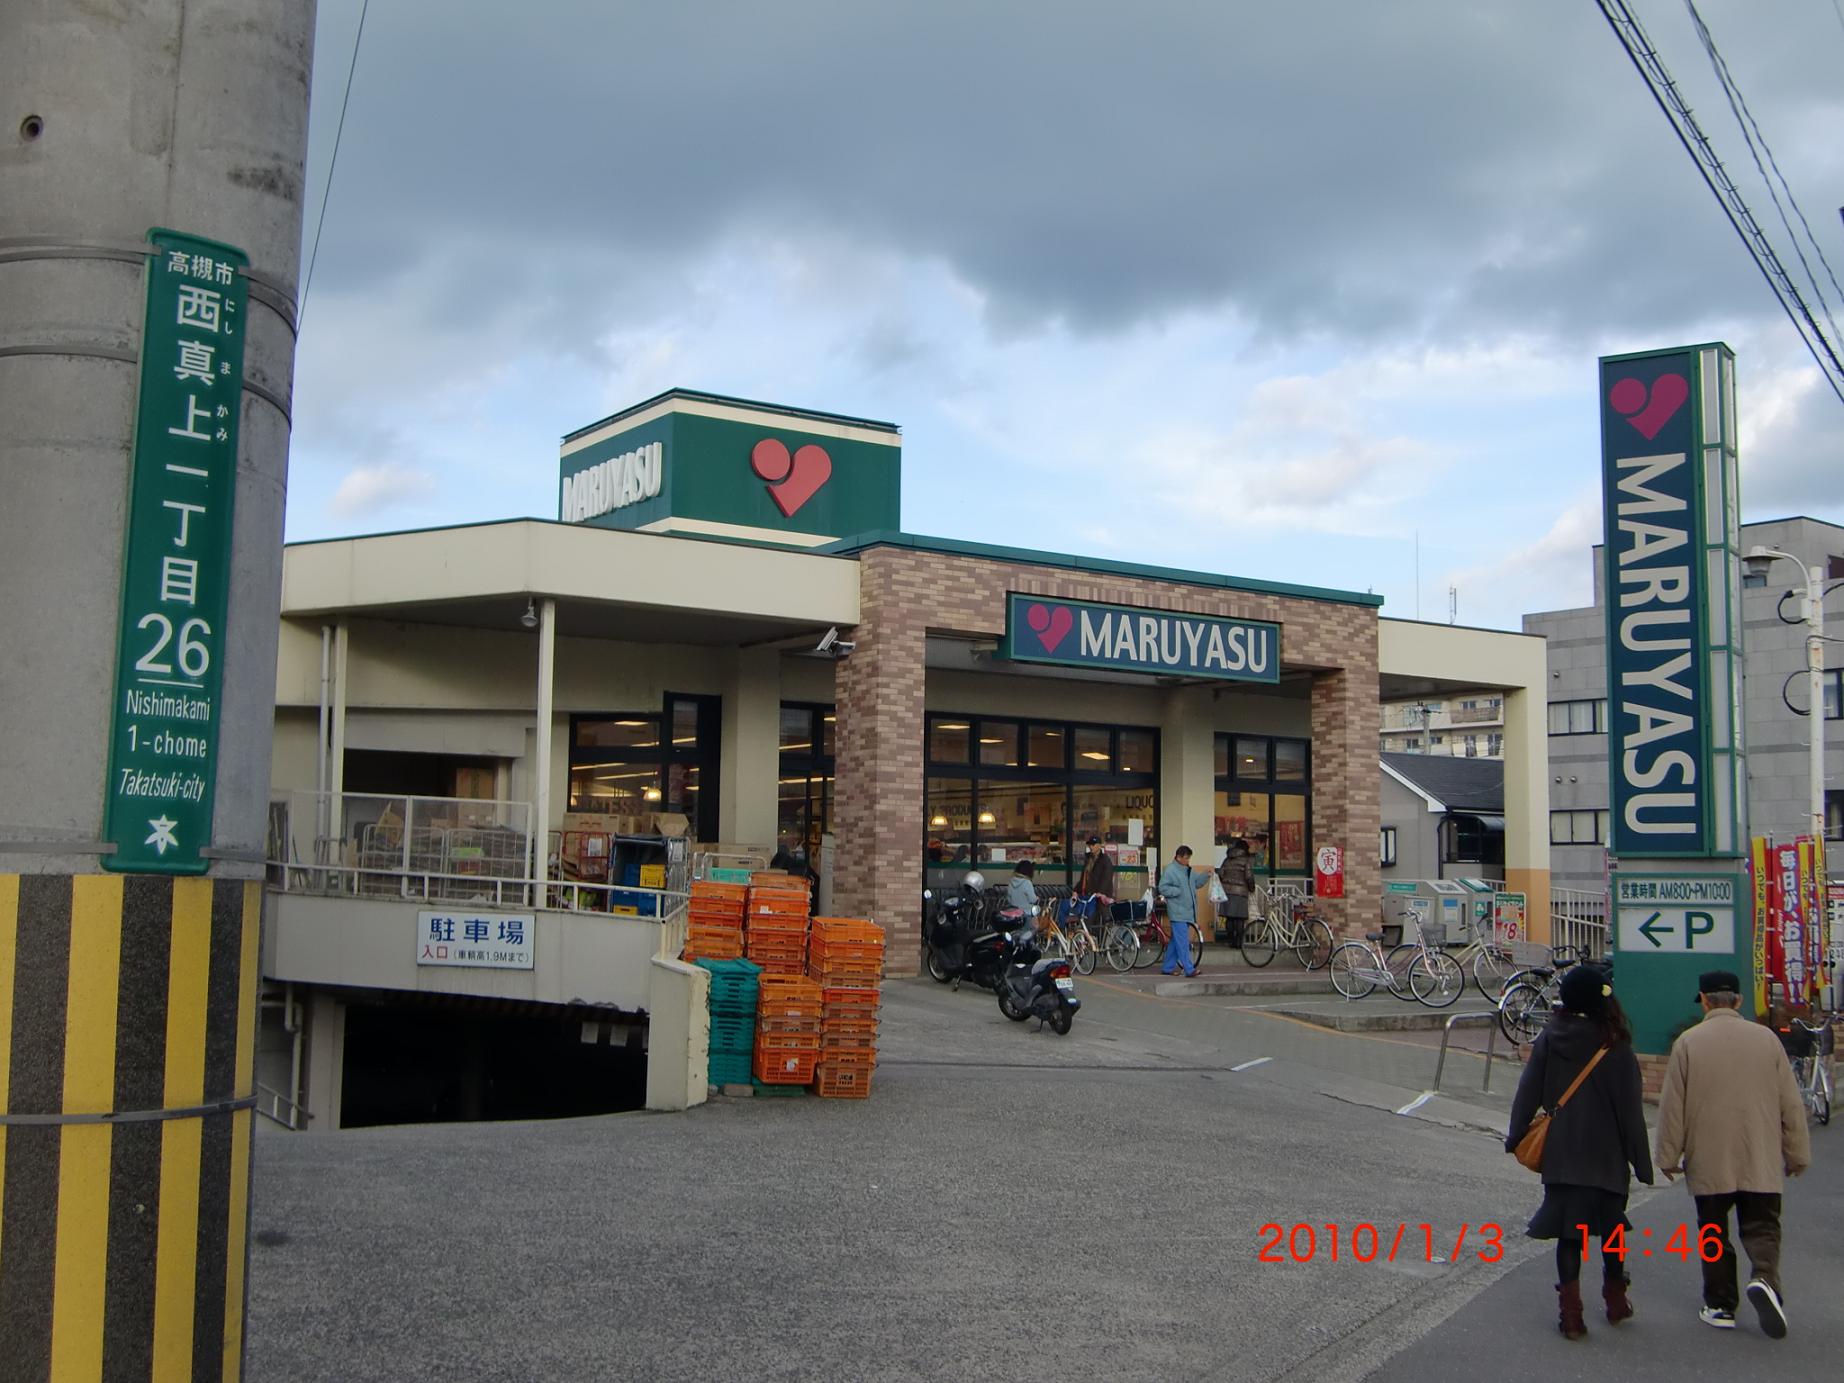 Supermarket. 789m to Super Maruyasu just above store (Super)